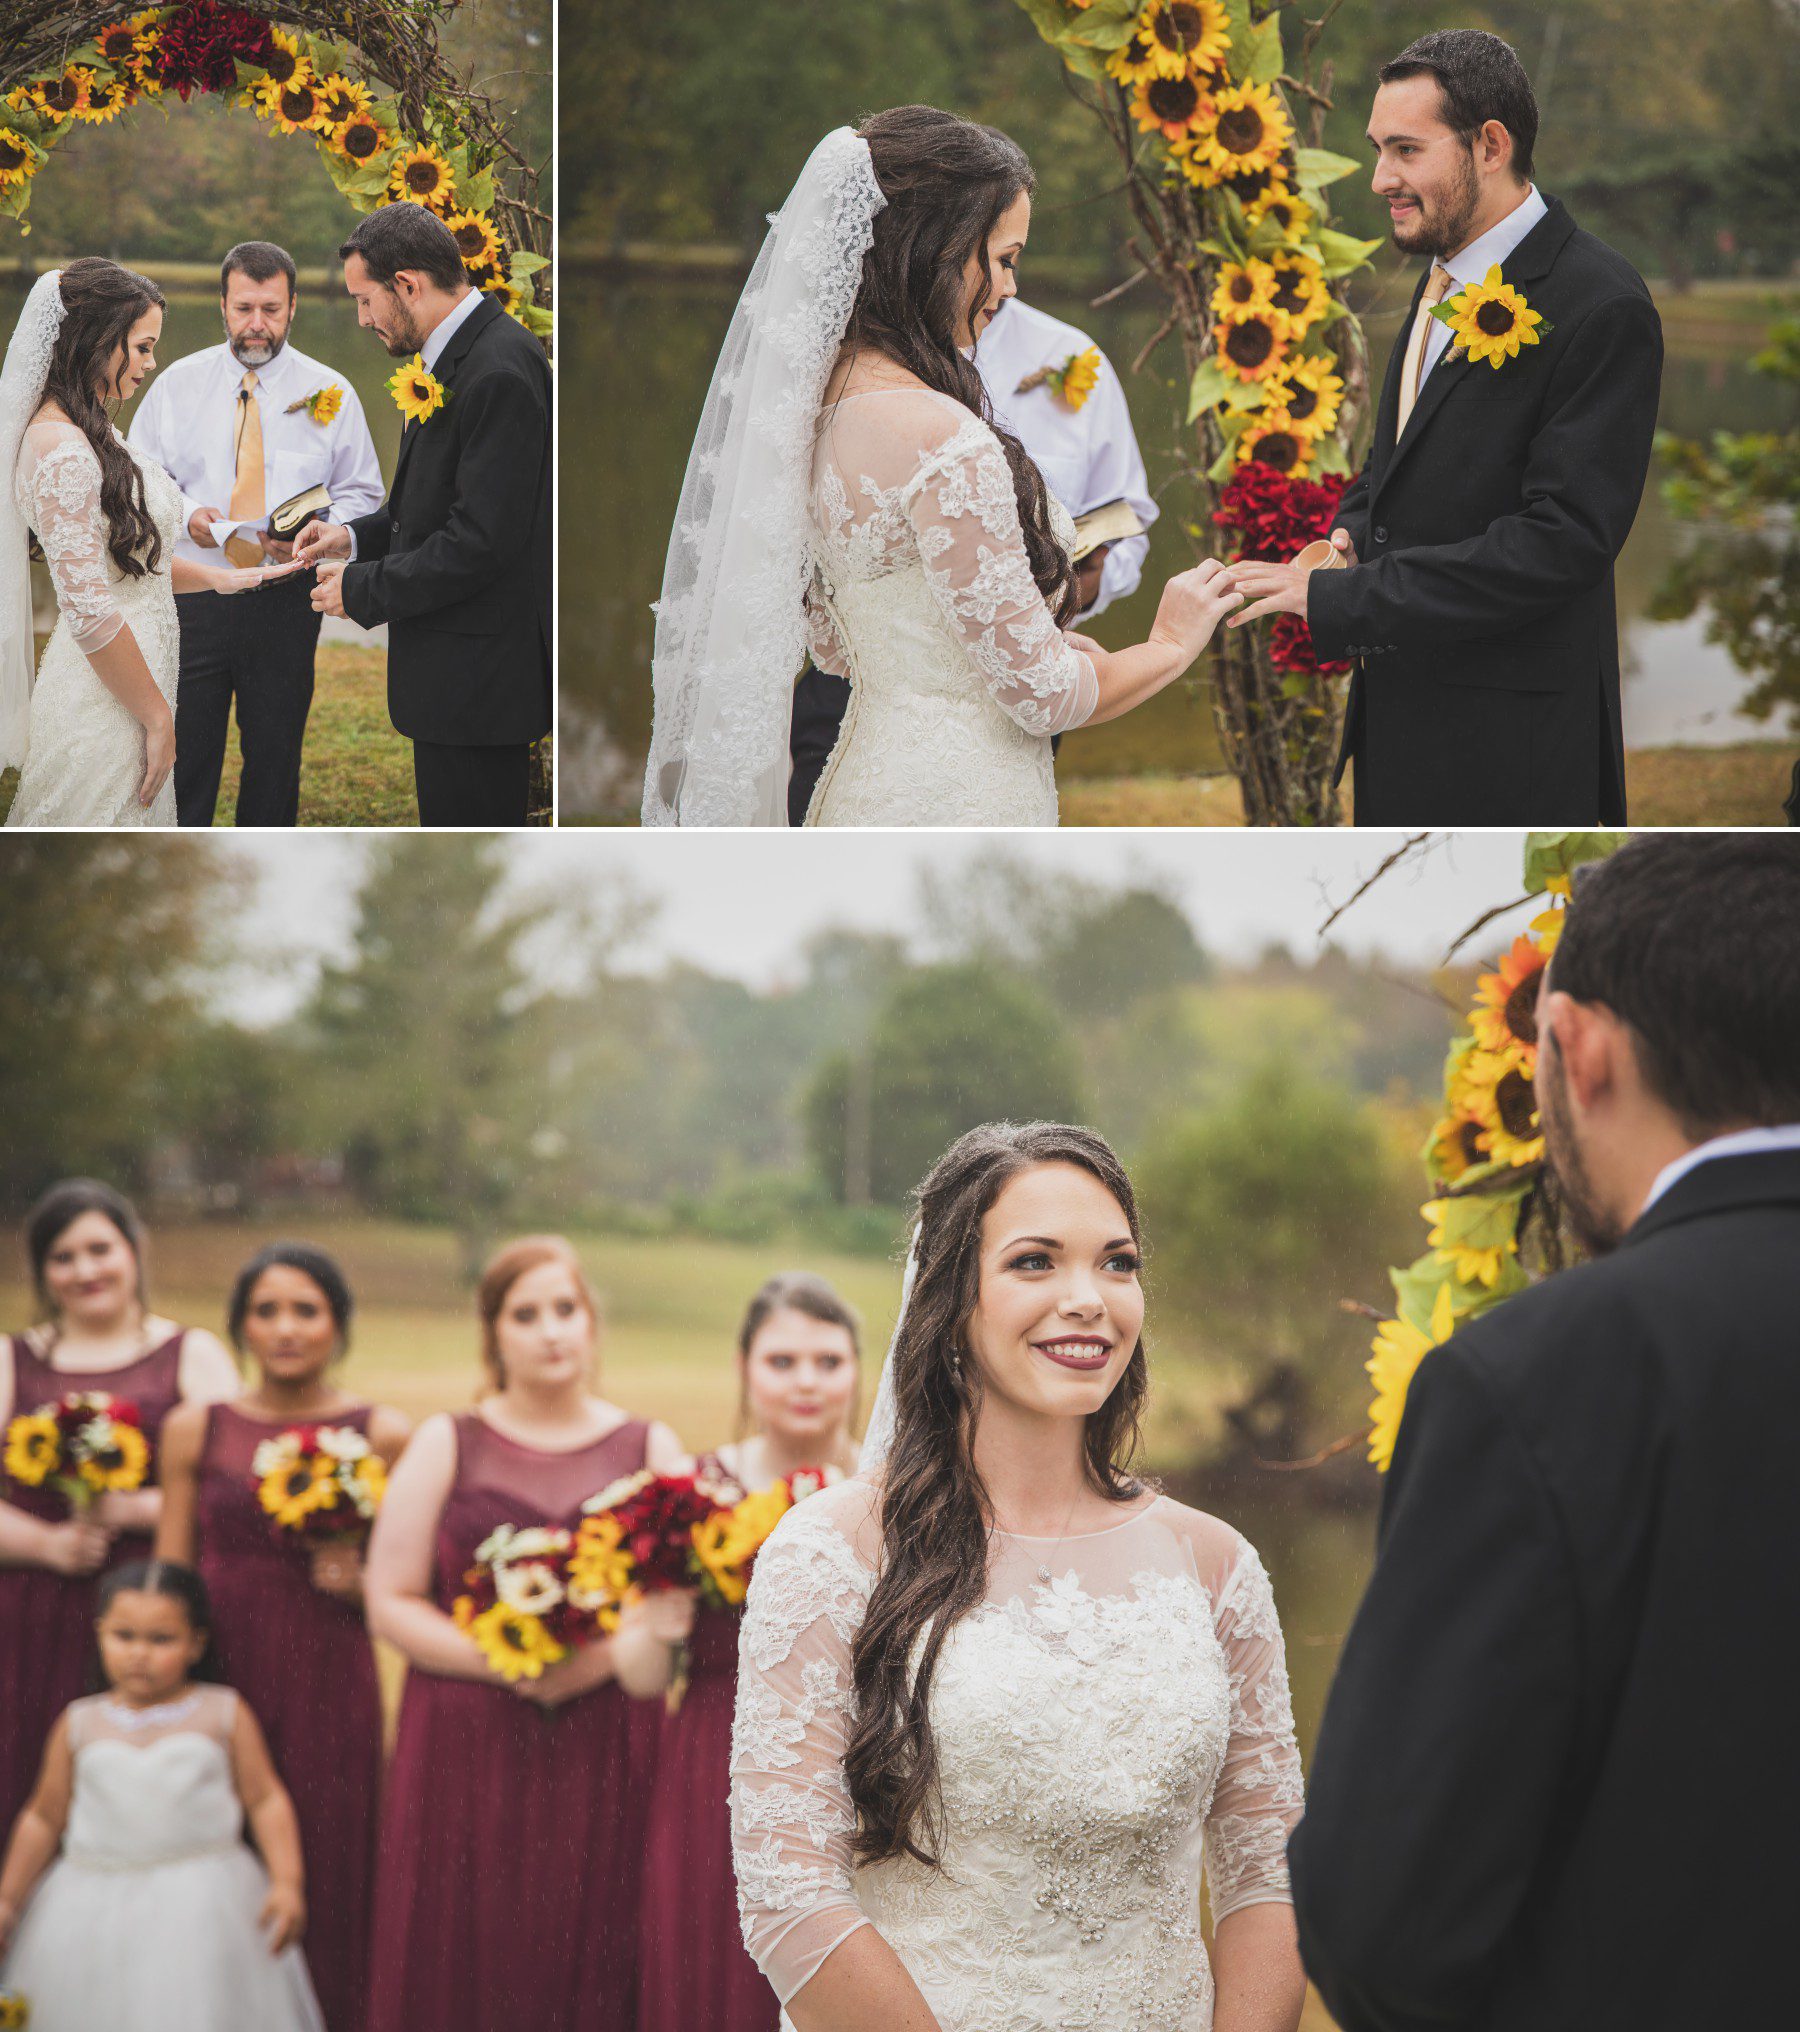 Nashville wedding photographer sunflowers fall wedding ceremony